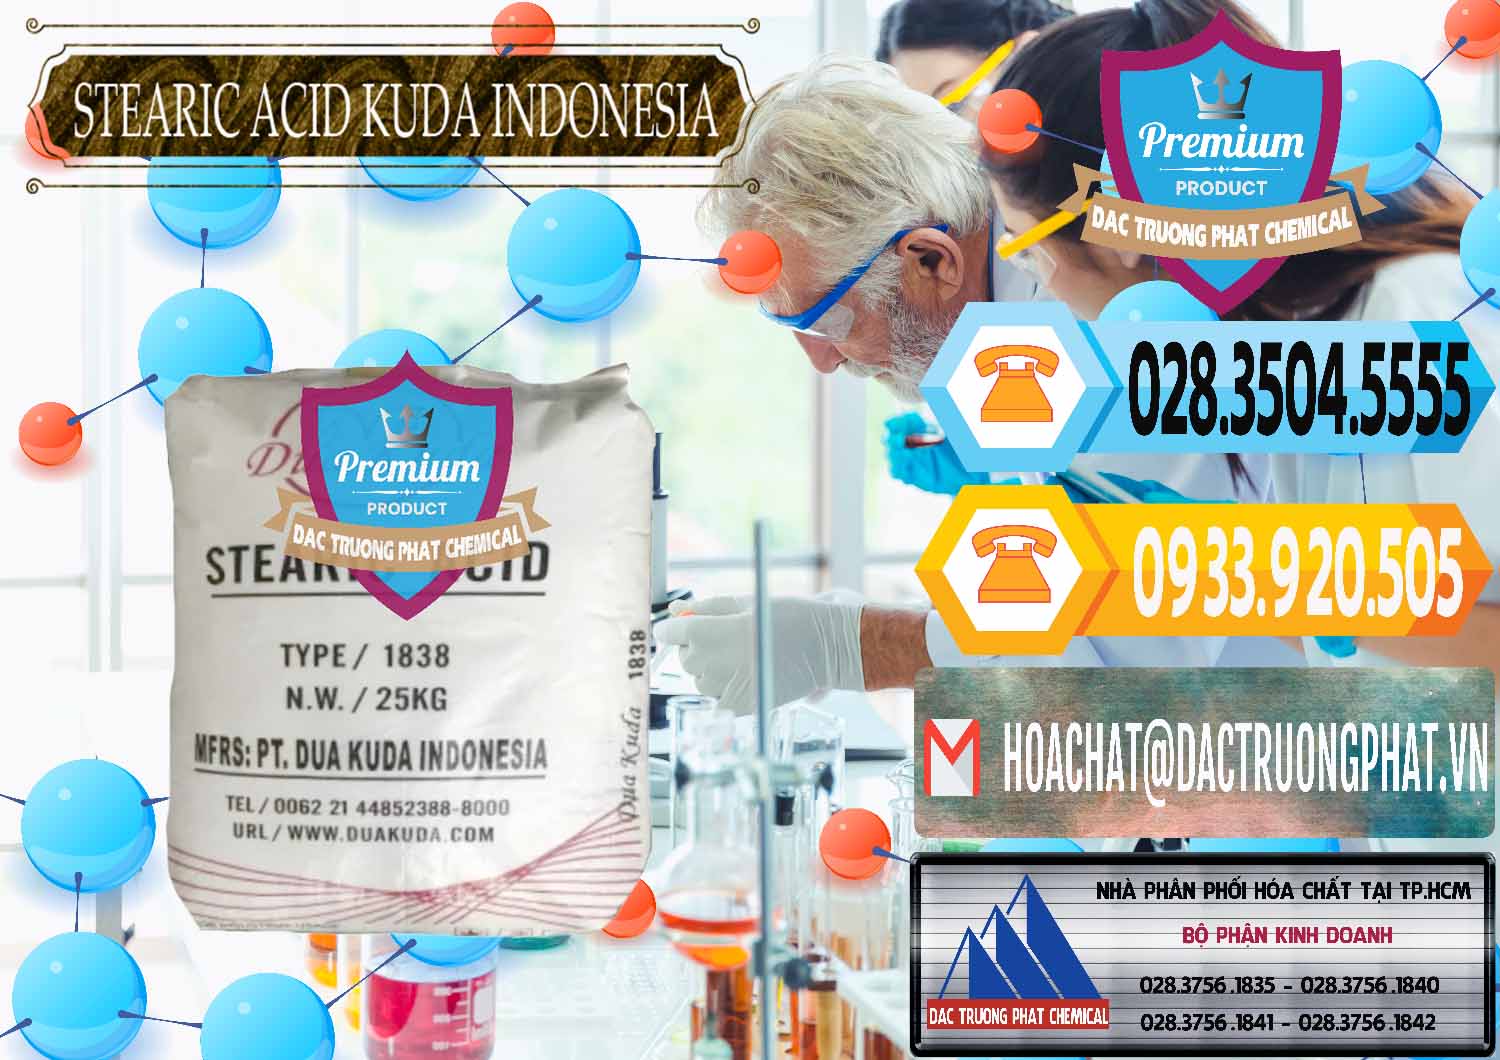 Đơn vị chuyên bán và cung ứng Axit Stearic - Stearic Acid Dua Kuda Indonesia - 0388 - Cty phân phối _ cung ứng hóa chất tại TP.HCM - hoachattayrua.net